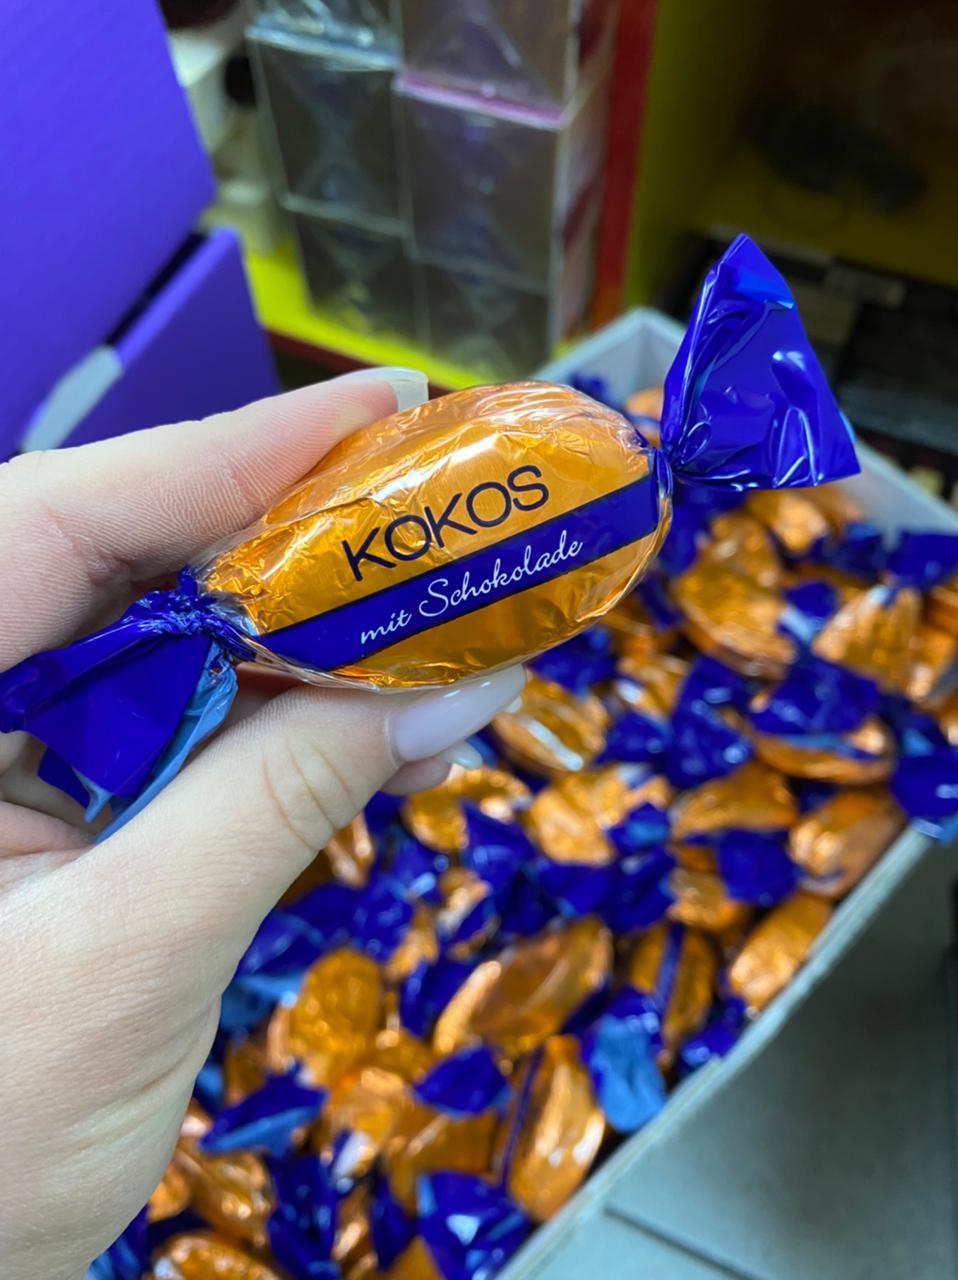 Шоколадные конфеты Kokos (кокос) 1кг